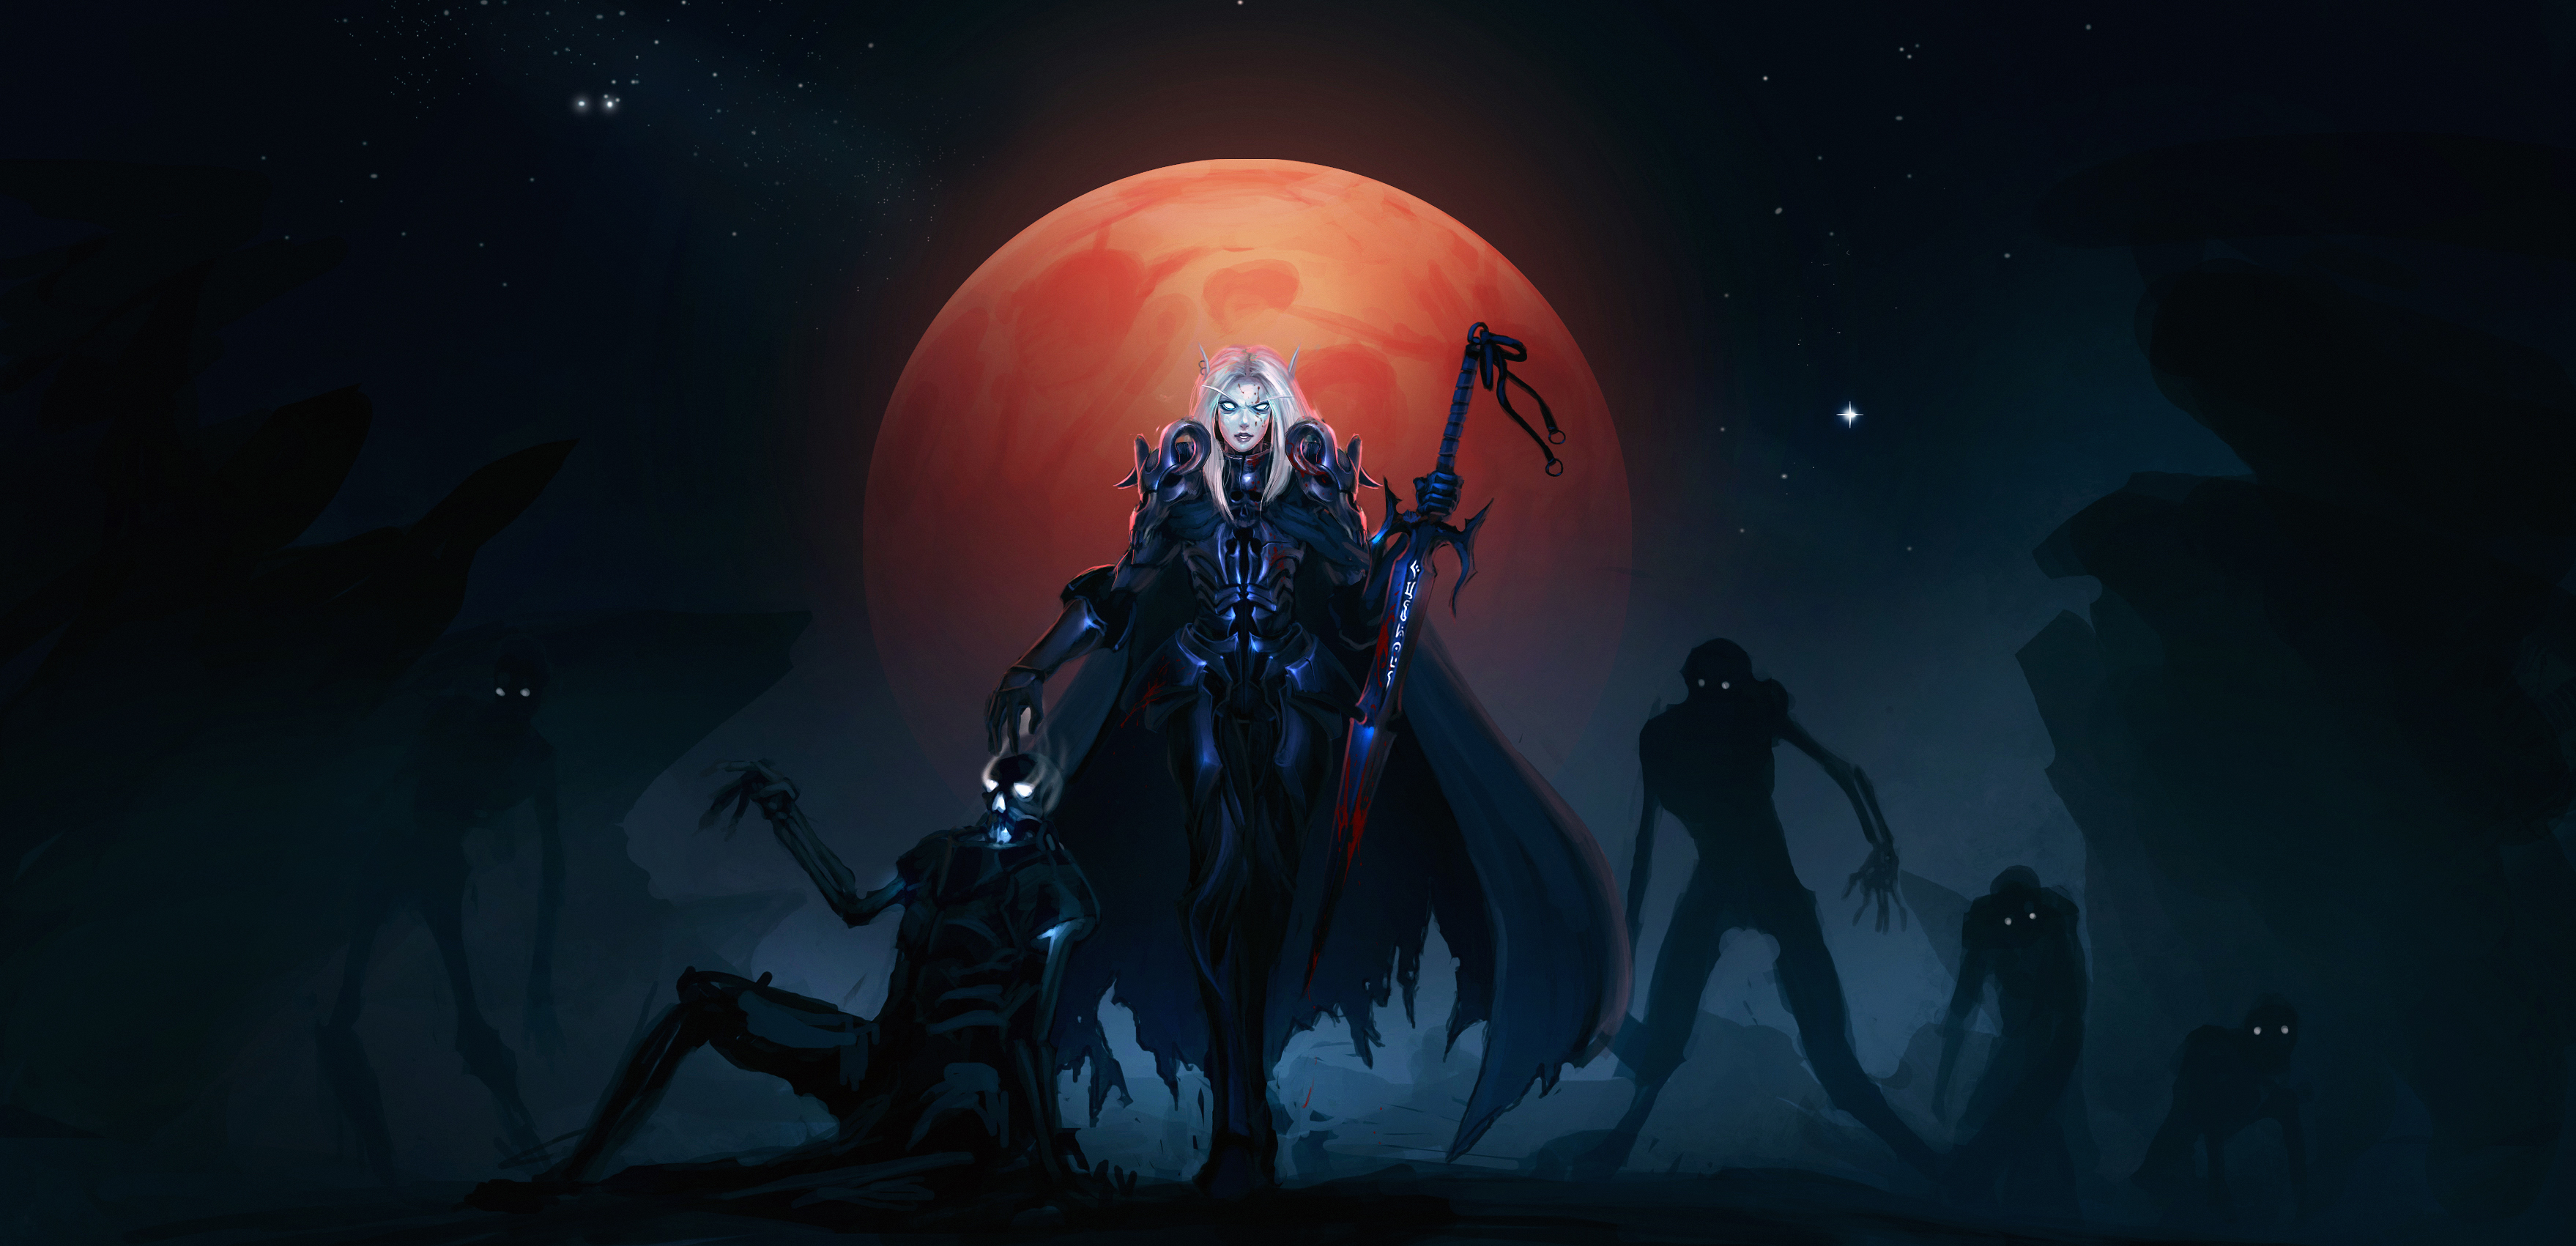 Armor Blood Elf Dark Elf Fantasy Moon Warrior Weapon Woman Warrior World Of Warcraft 3517x1701